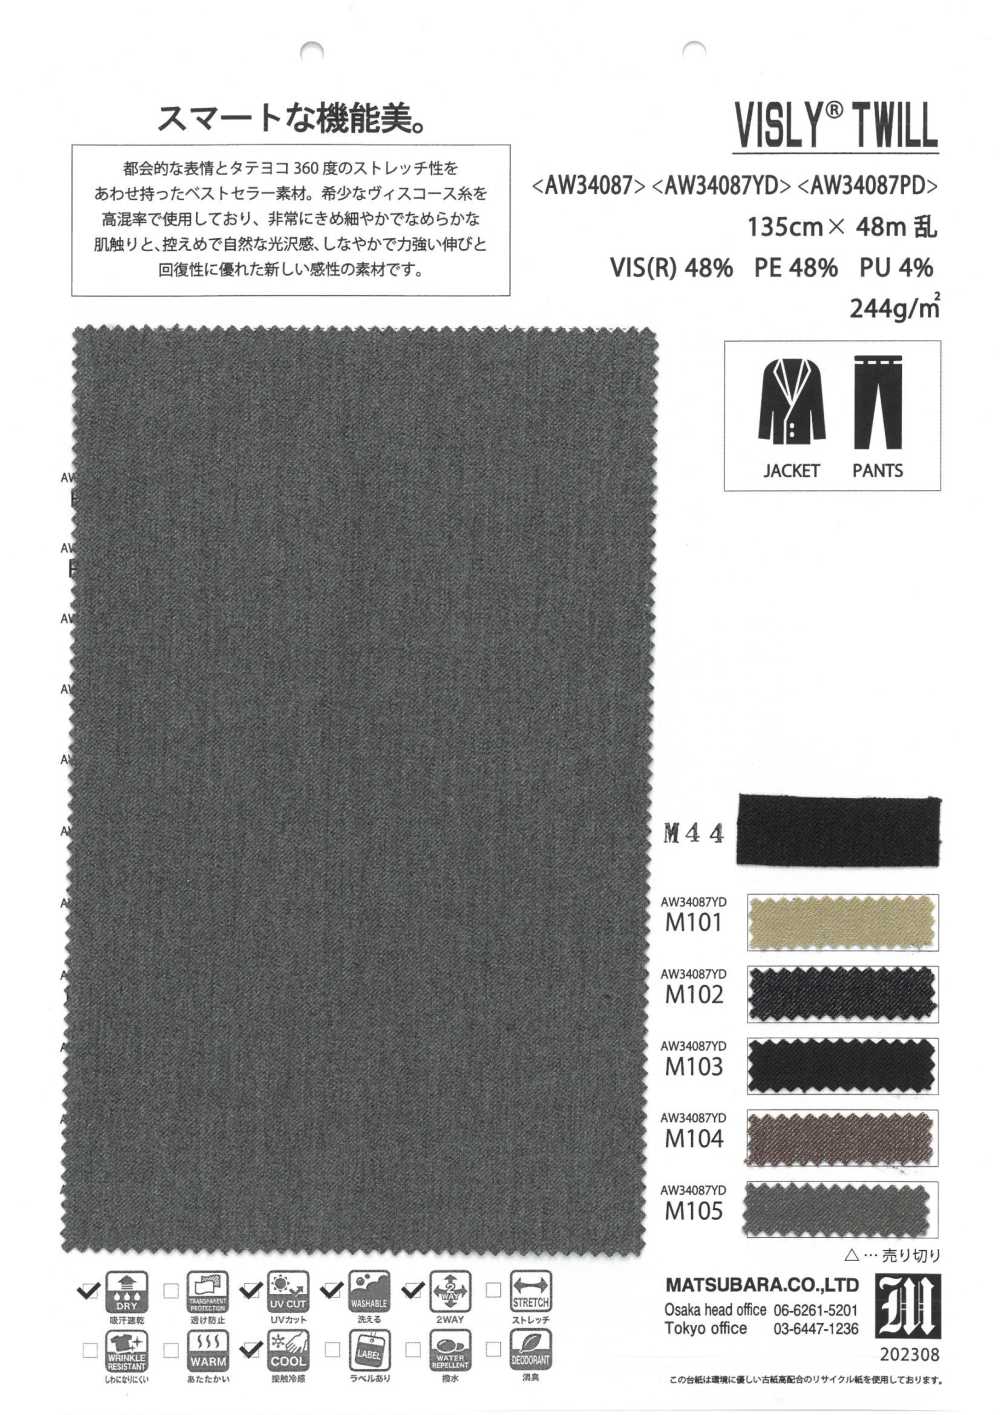 AW34087PD Bisley Twill[Textile / Fabric] Matsubara